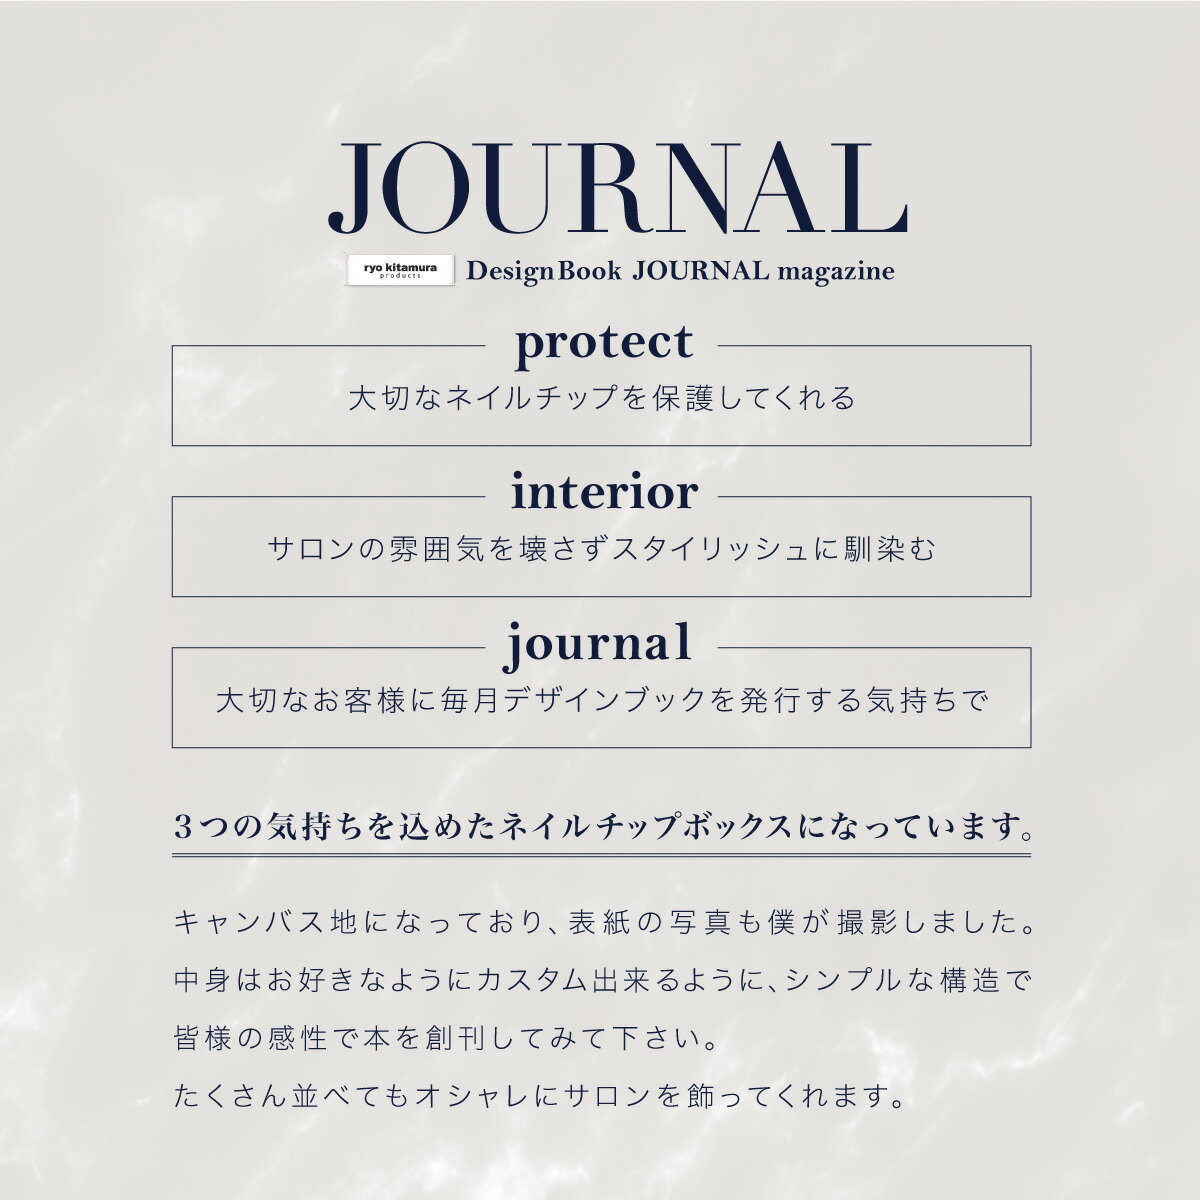 チップ ディスプレイ アート サンプル アルバム サロン@ryokitamura product -JOURNAL magazine Issue No.1- _865205